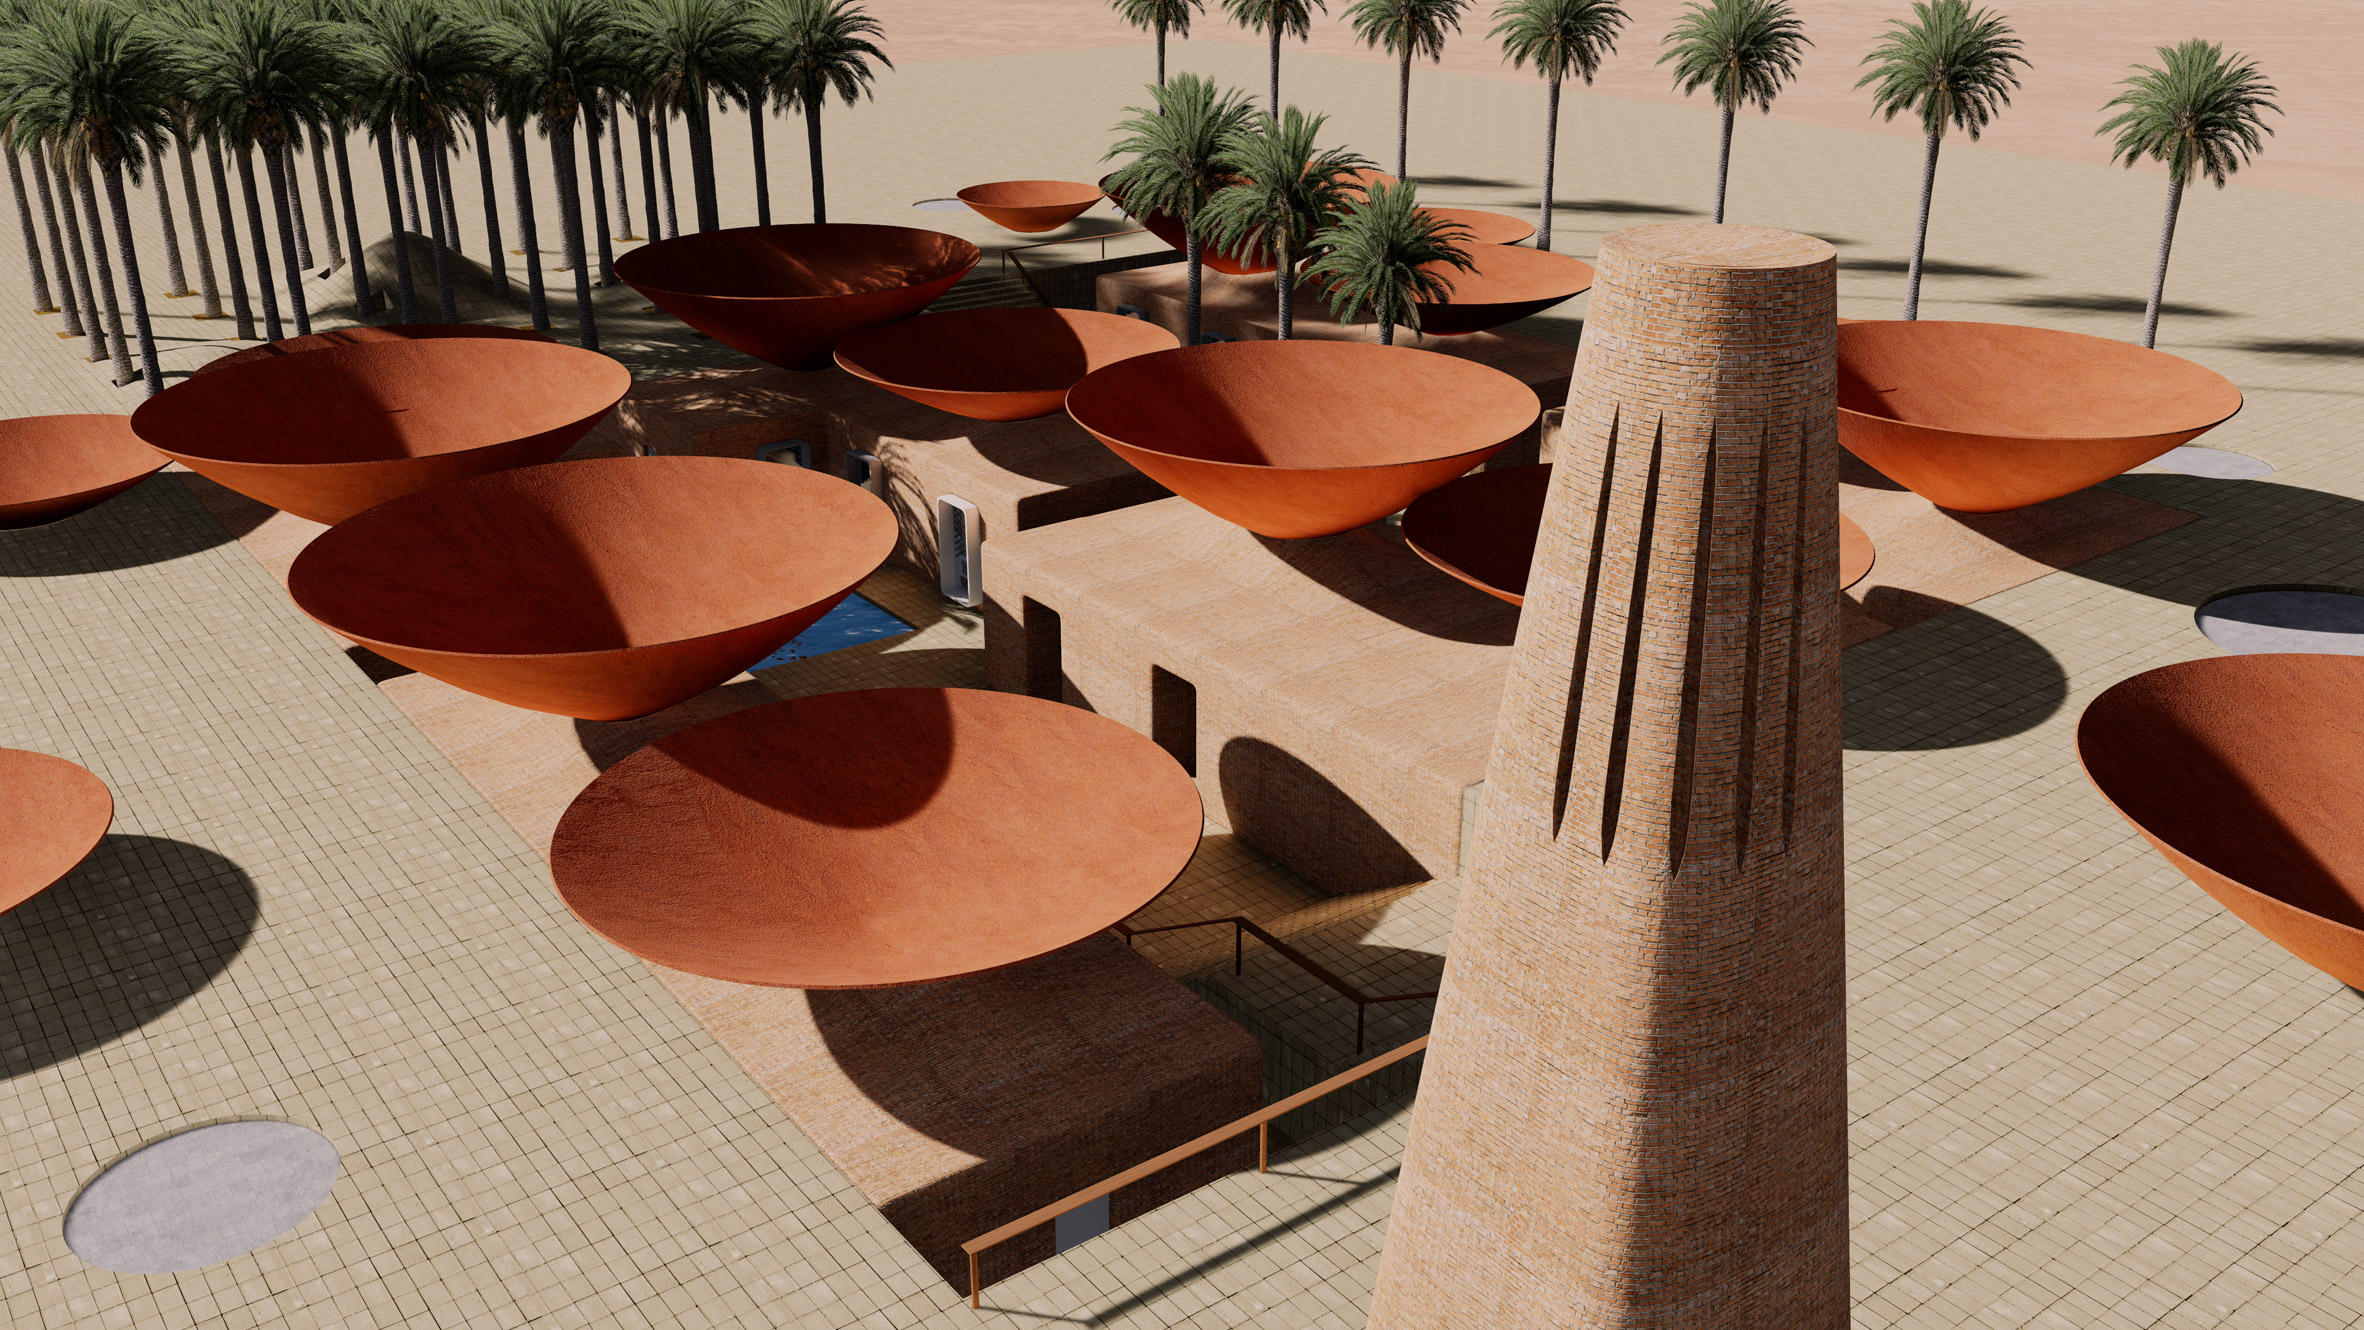 Concave Roof par BM Design Studios sur Design Maroc